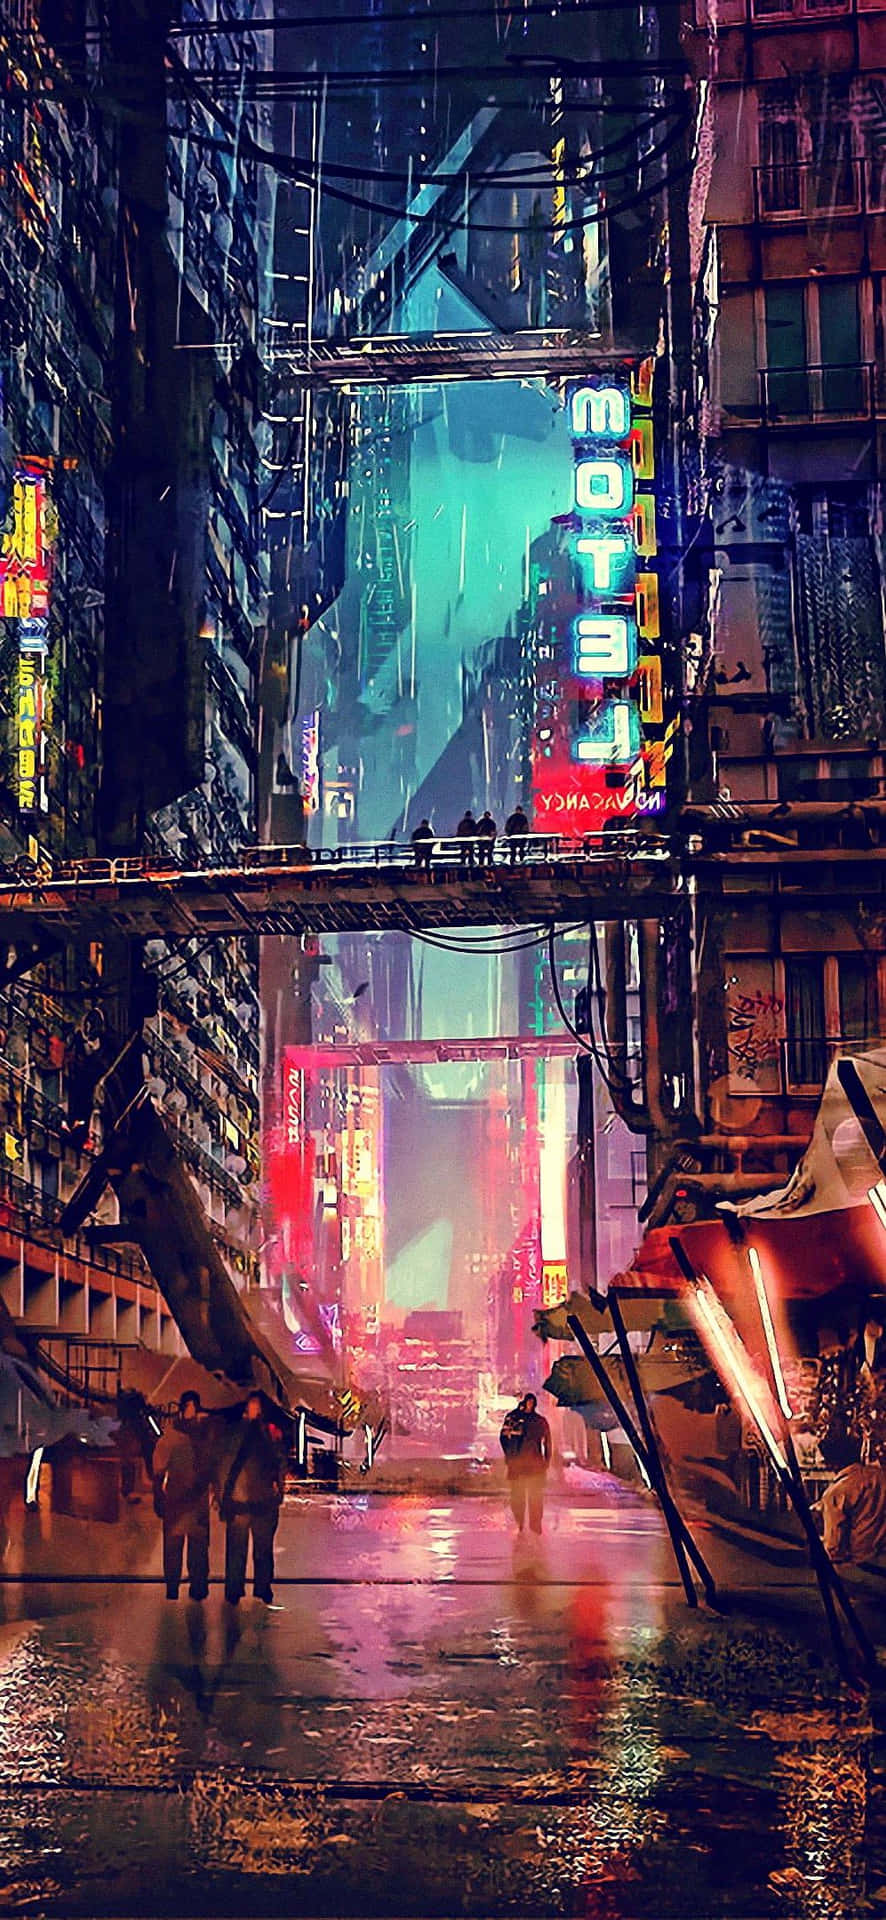 Benvenutia Cyberpunk City, Una Città Di Grattacieli Imponenti E Strade Illuminate Da Neon.